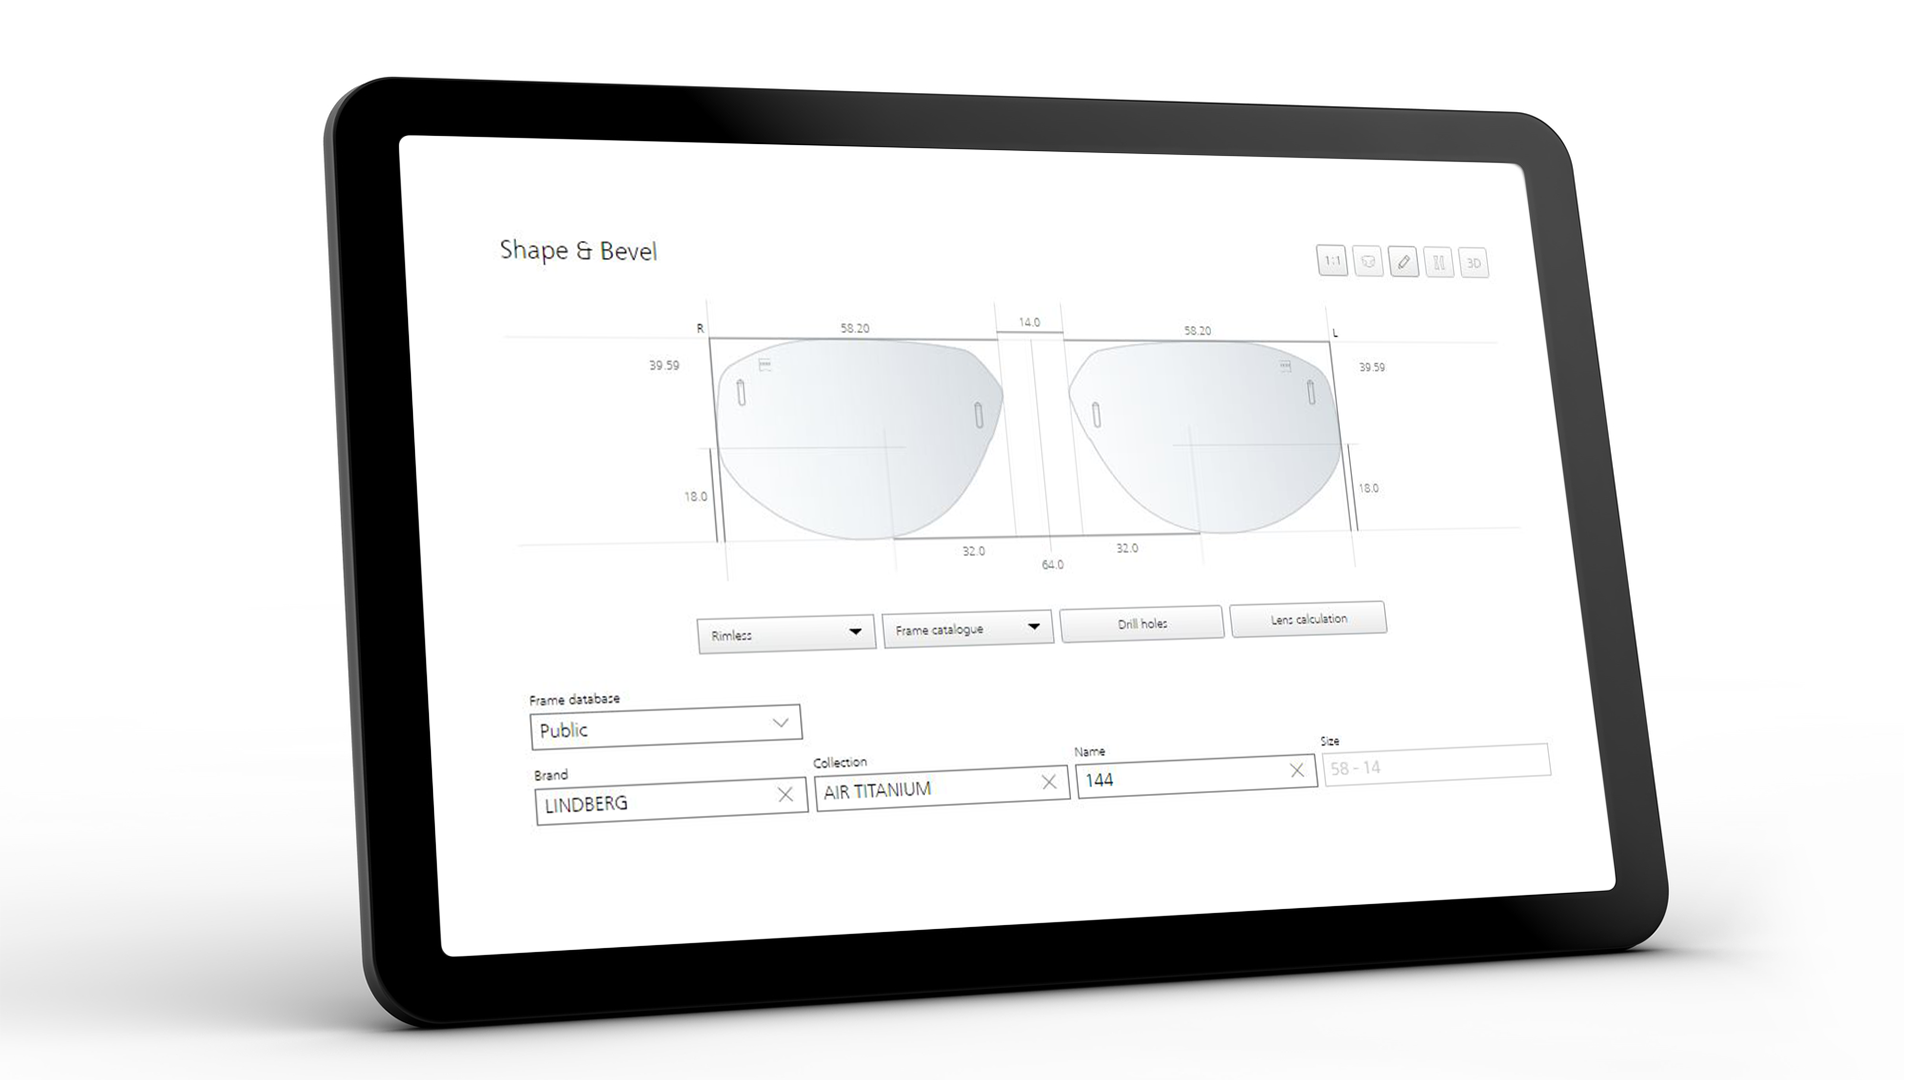 Obrazovka tabletu zobrazující rozhraní ZEISS VISUSTORE pro tvar a fazetu 